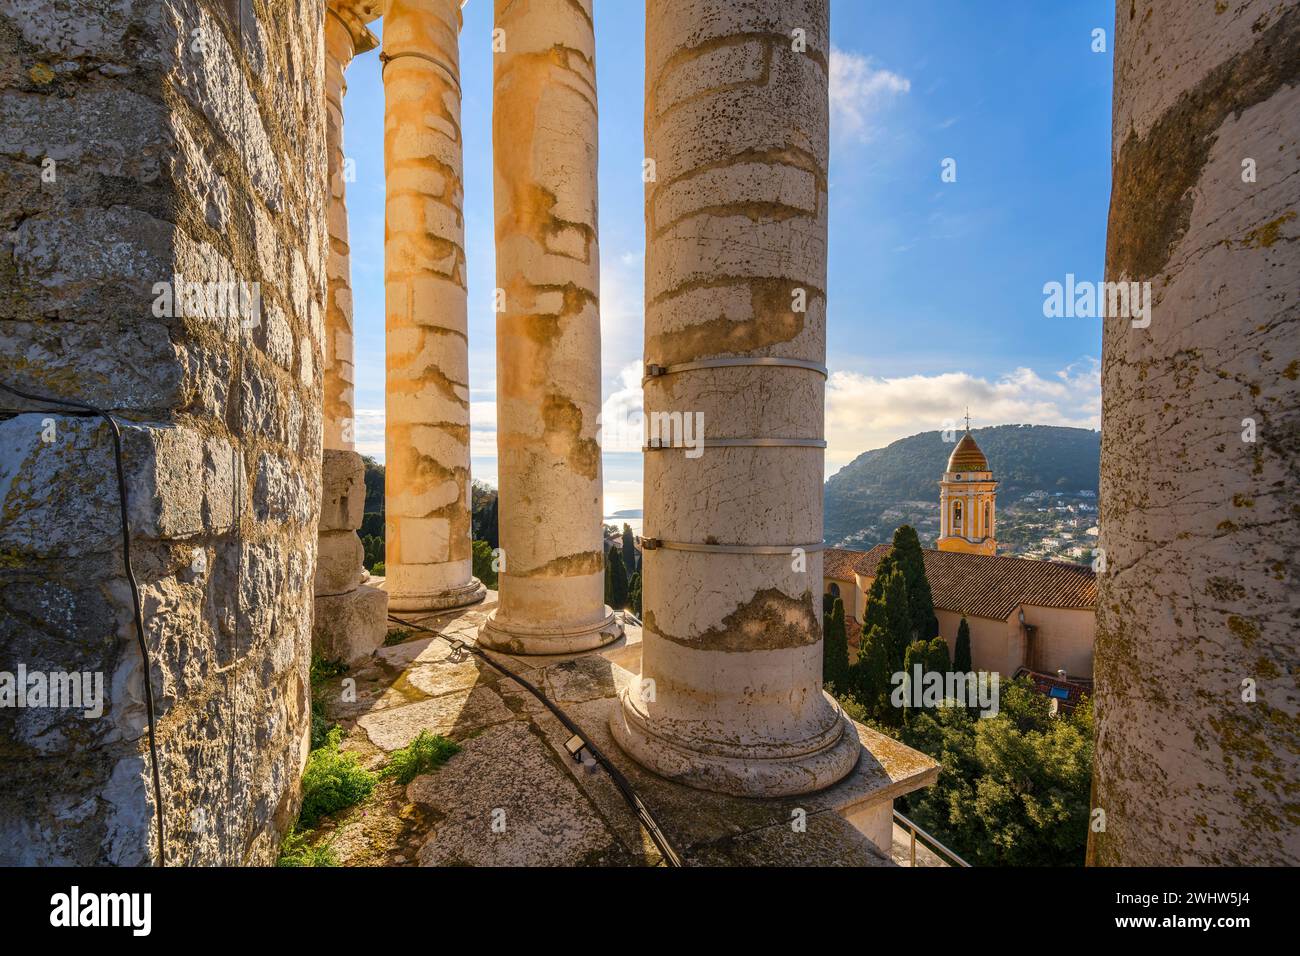 Vista dall'interno delle colonne in cima all'antico Trofeo Romano di Augusto, monumento del Mar Mediterraneo e chiesa di la Turbie, Francia. Foto Stock